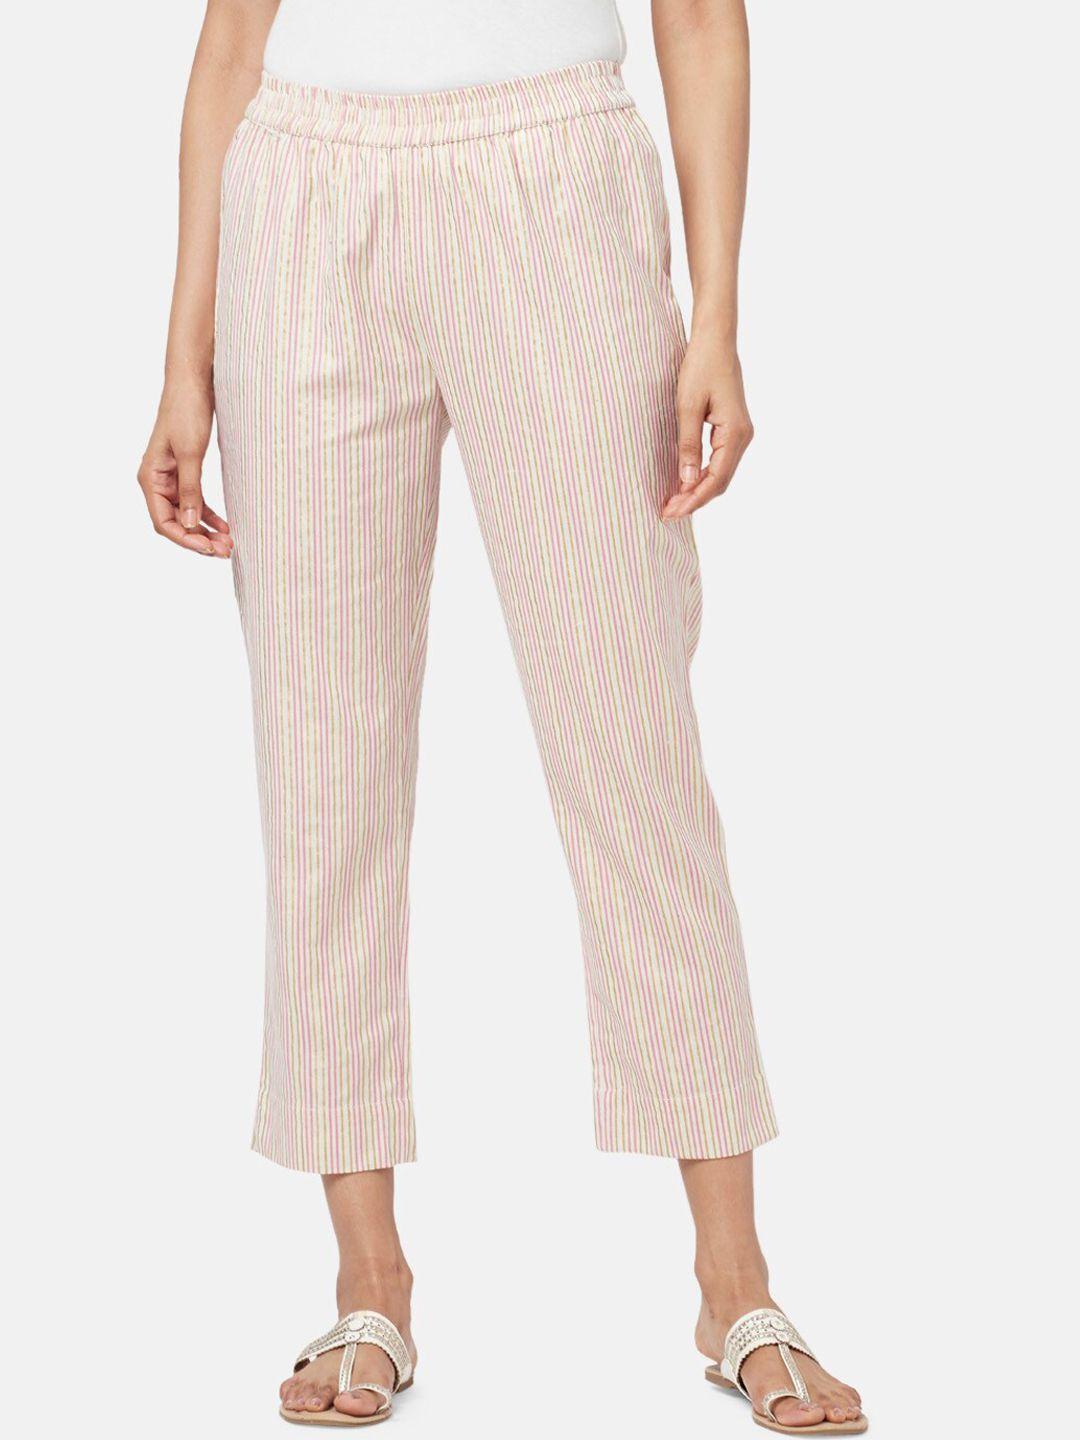 rangmanch-by-pantaloons-women-striped-cropped-trouser